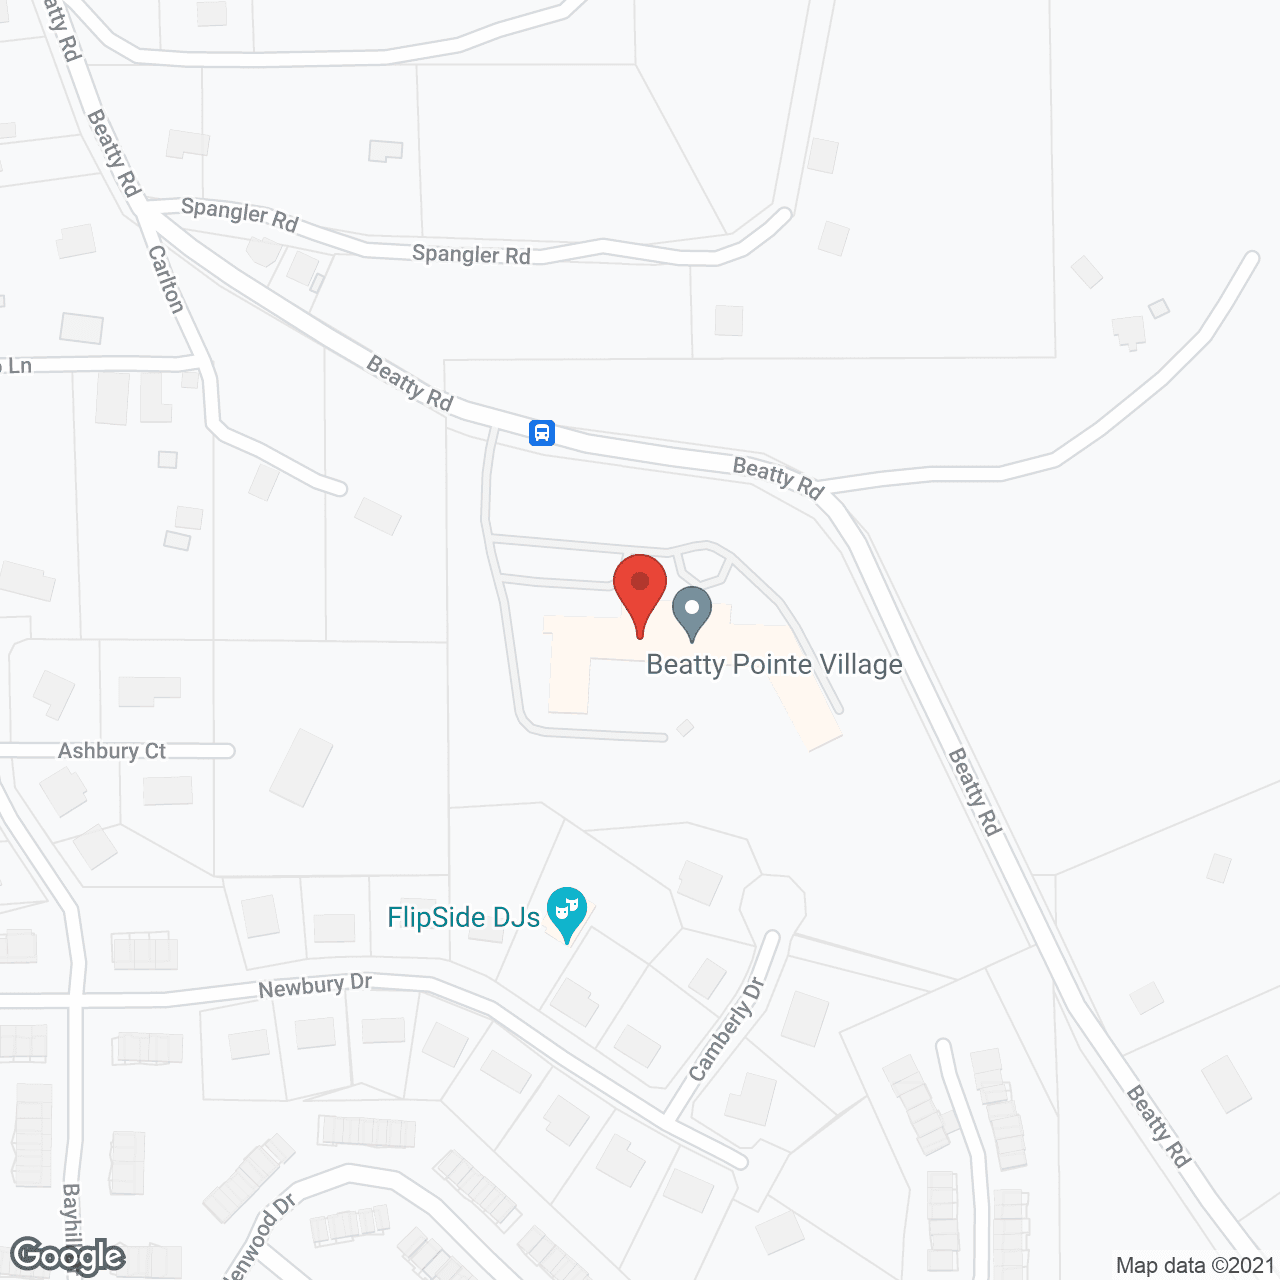 Beatty Pointe Village in google map